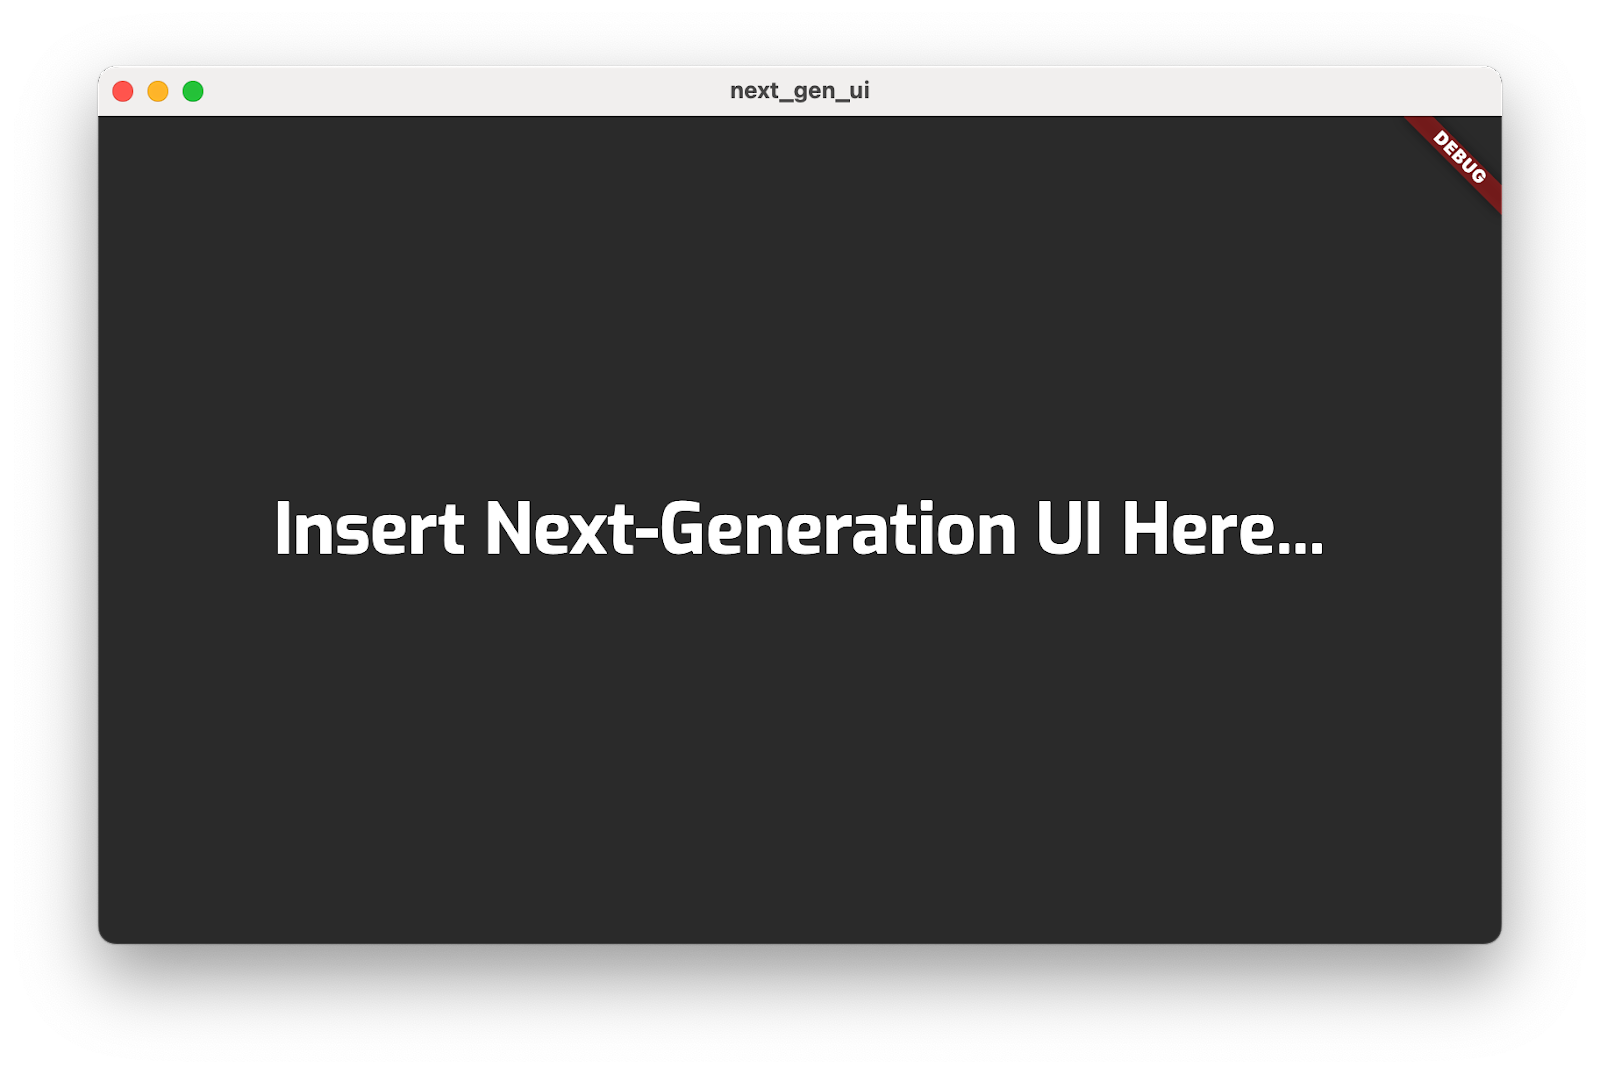 La app del codelab que se ejecuta con el título “Insert Next-Generation UI Here...”